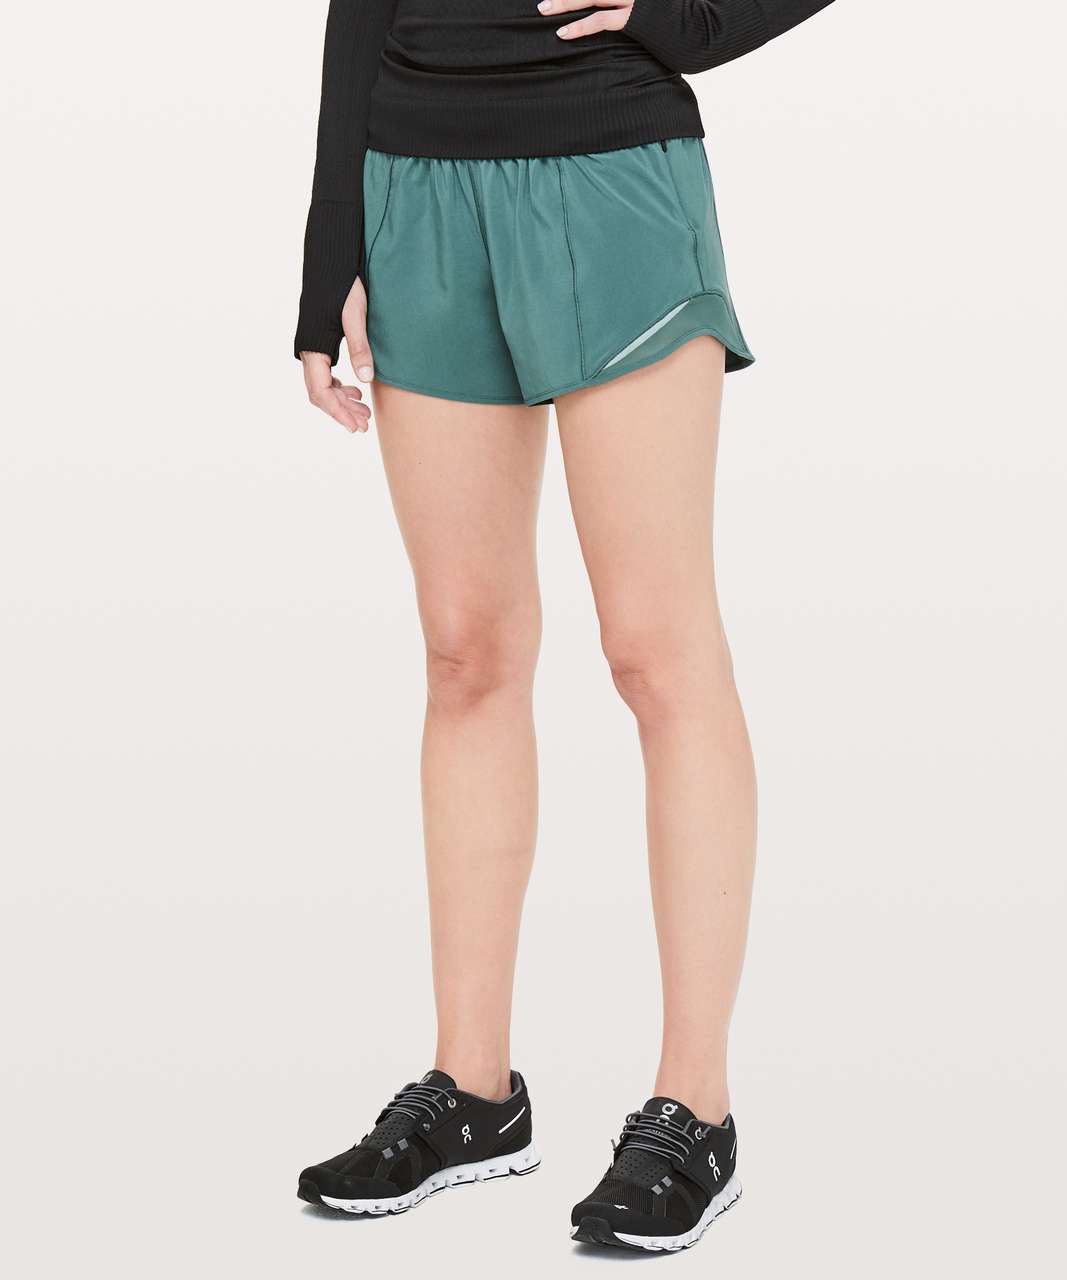 green lululemon shorts